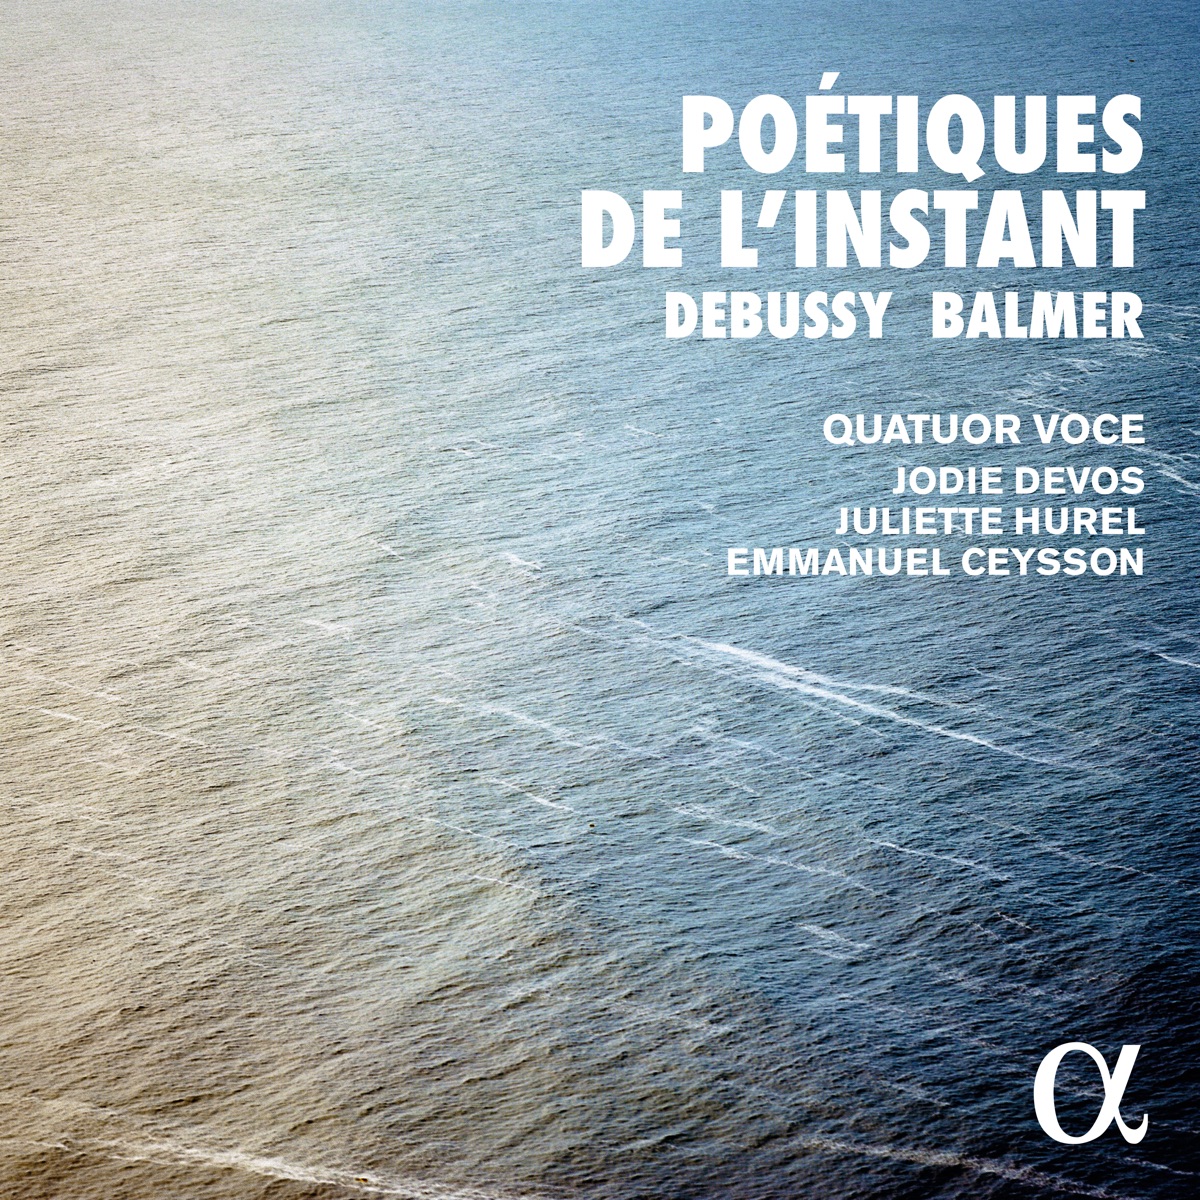 Poétiques de l'instant II: Ravel & Mantovani - Album by Quatuor Voce -  Apple Music